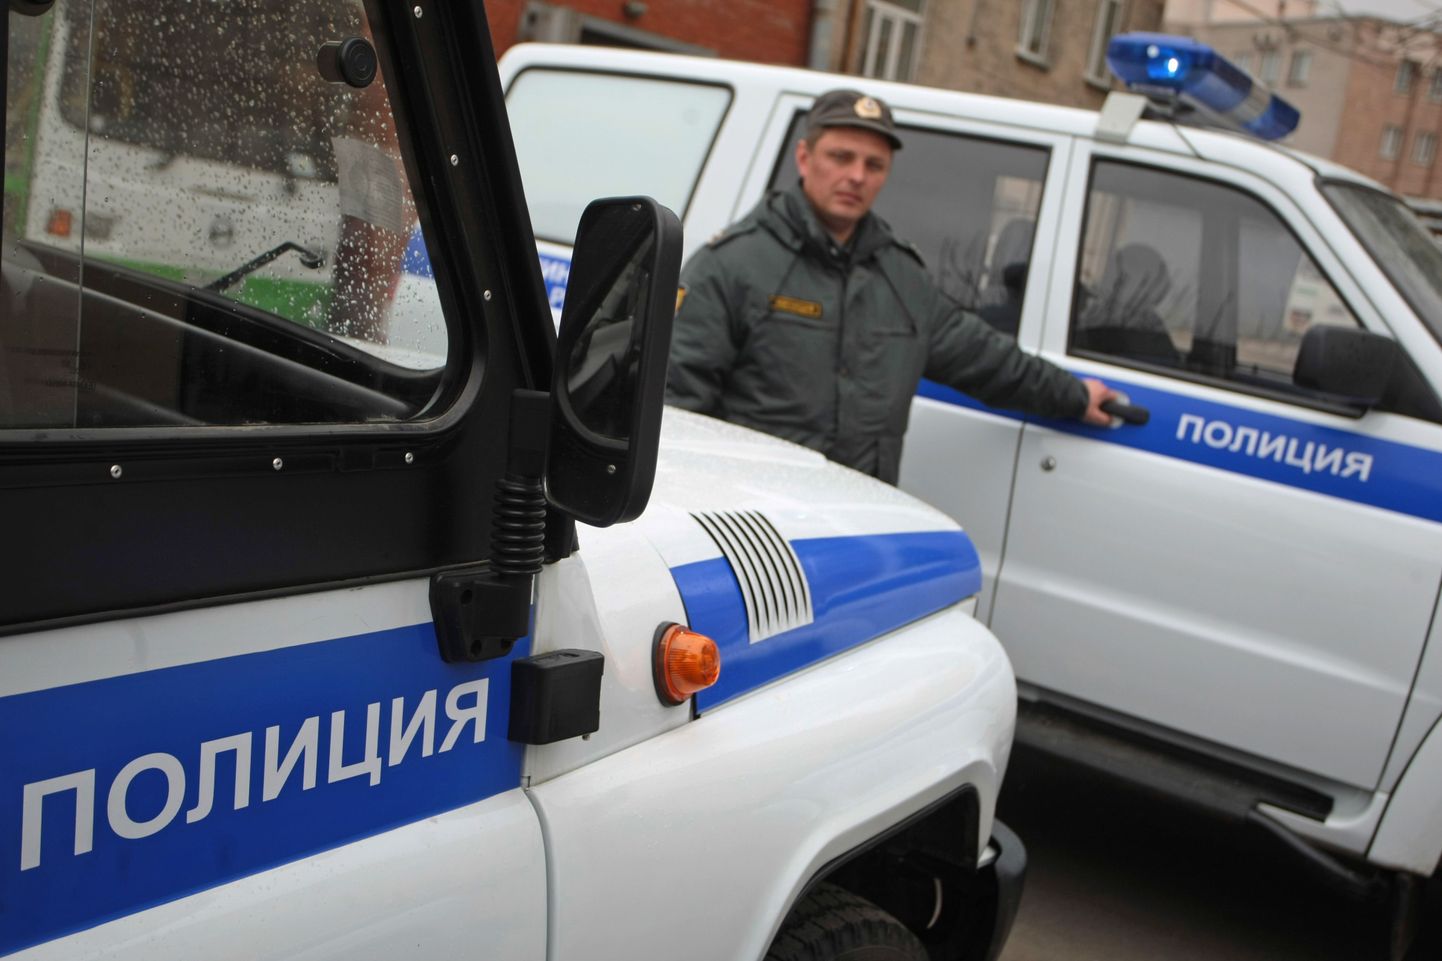 Vene politseiautod